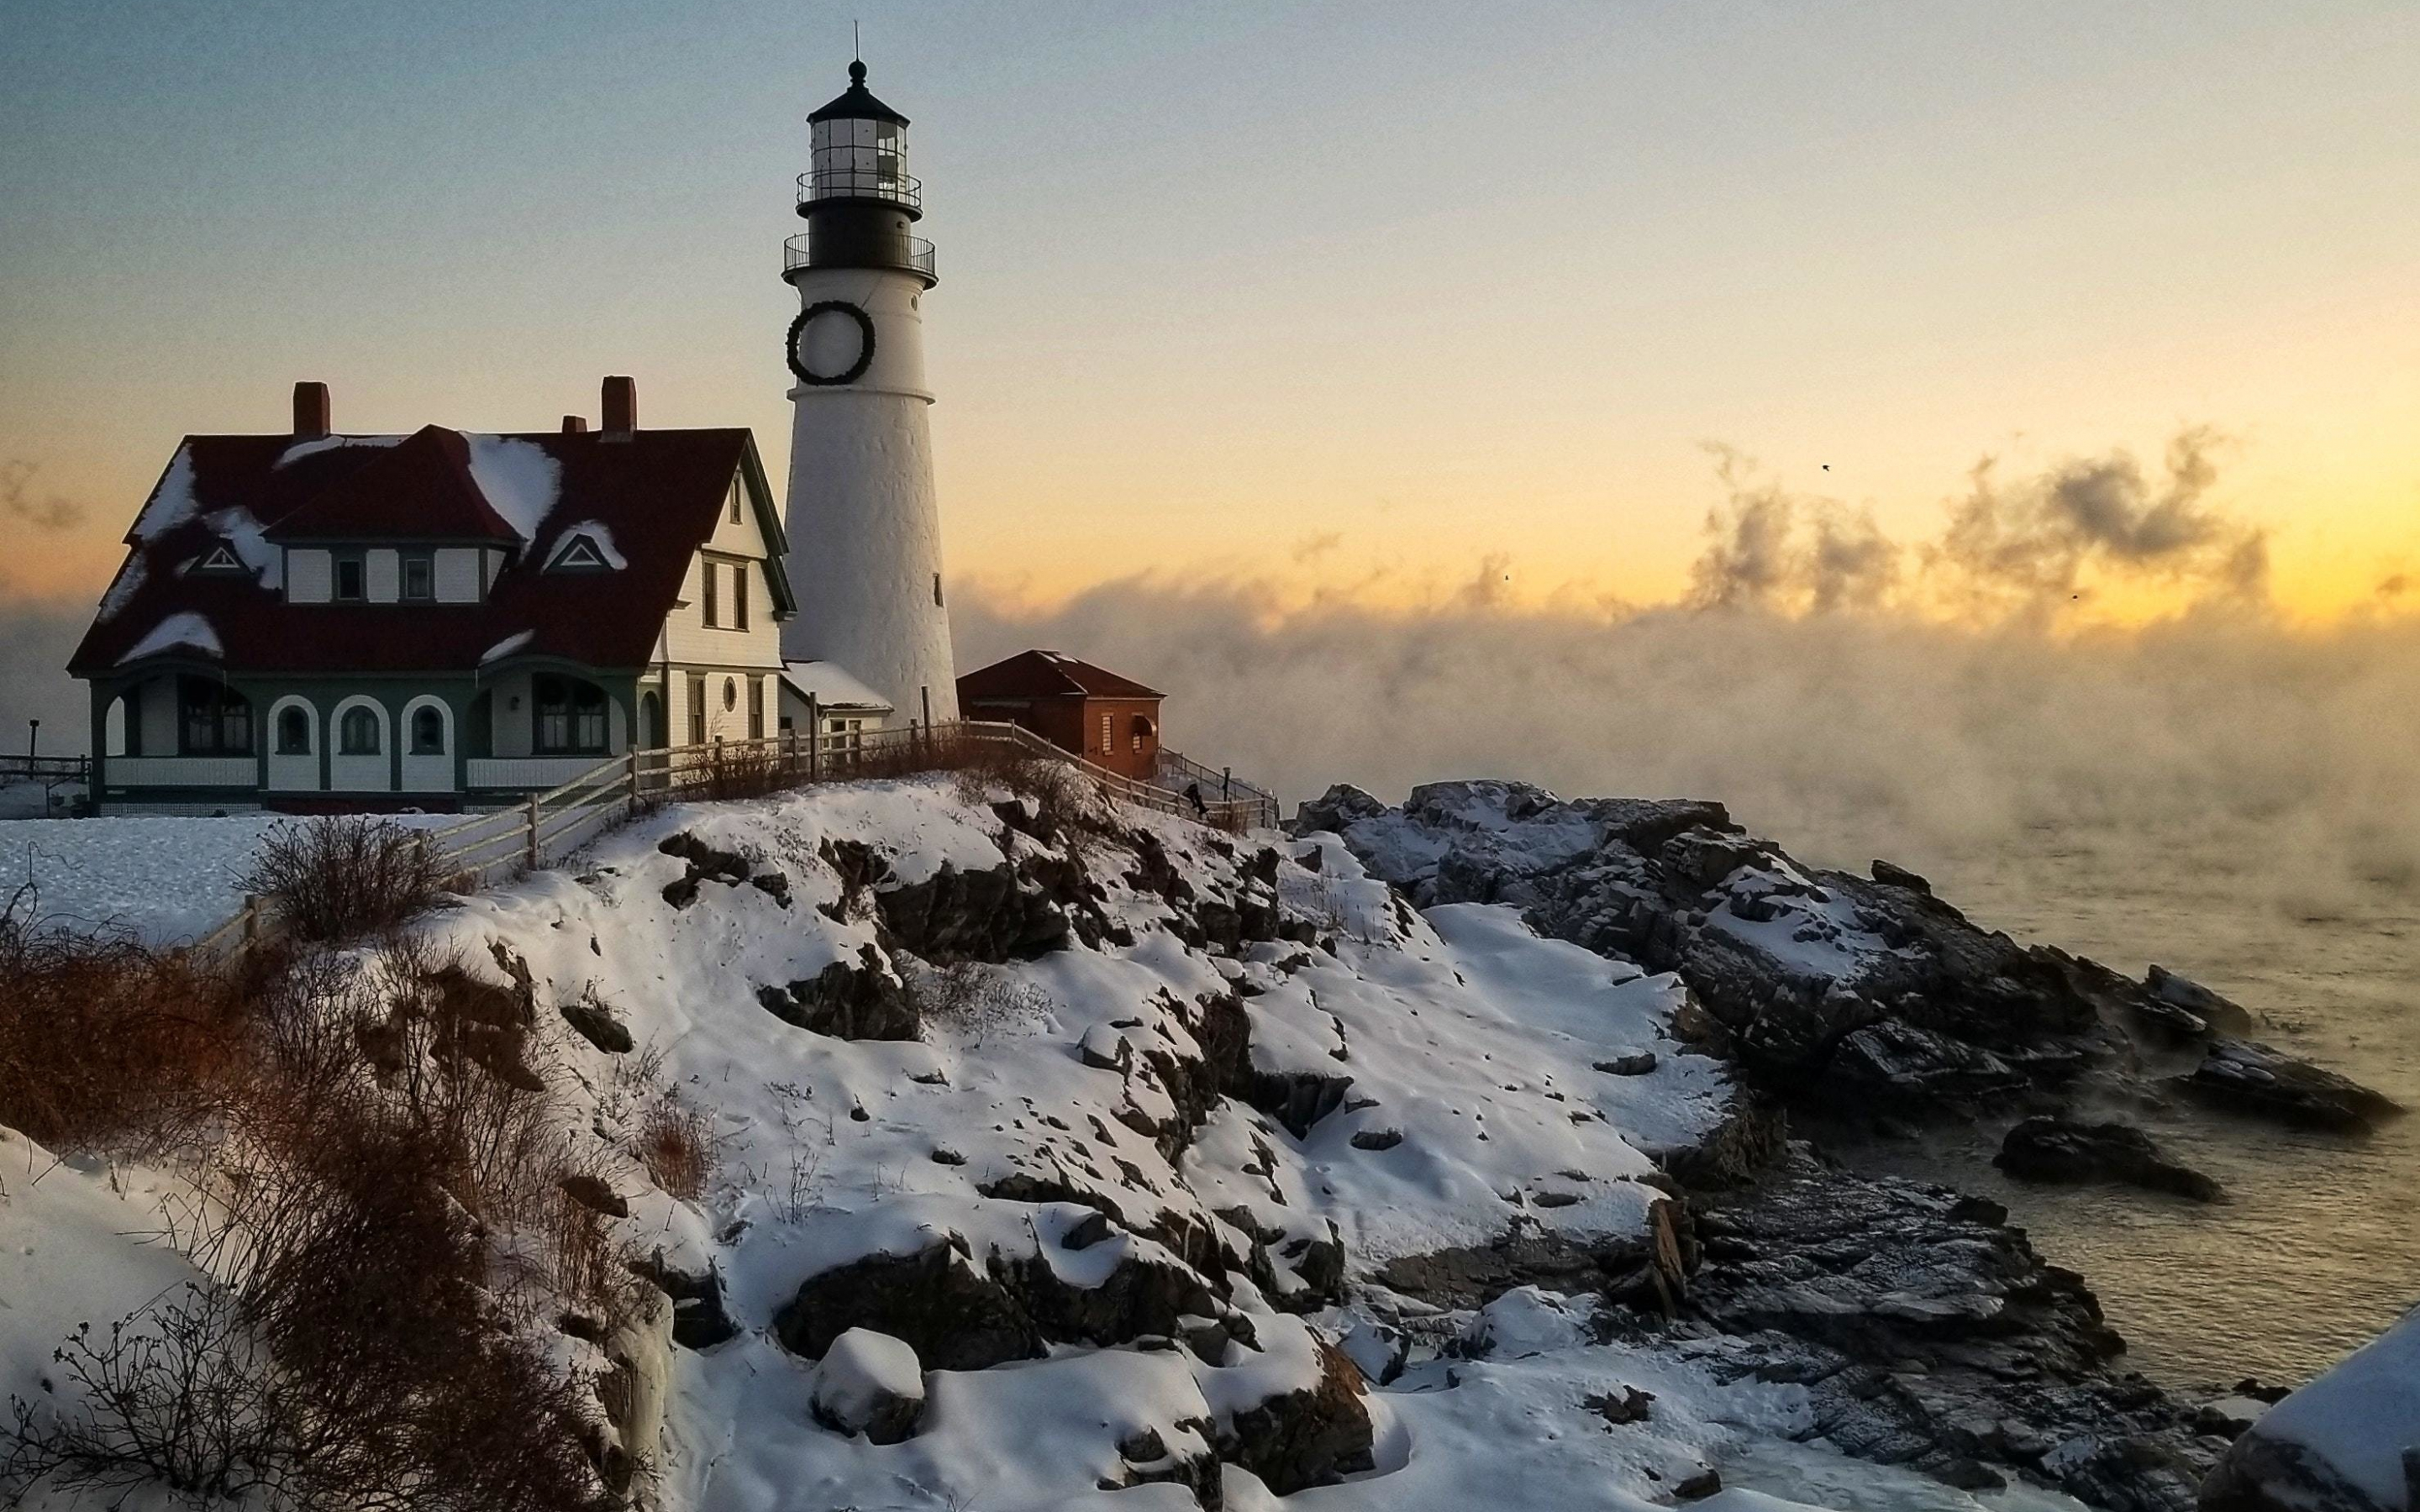 Lighthouse, coast, winter, 2880x1800 wallpaper